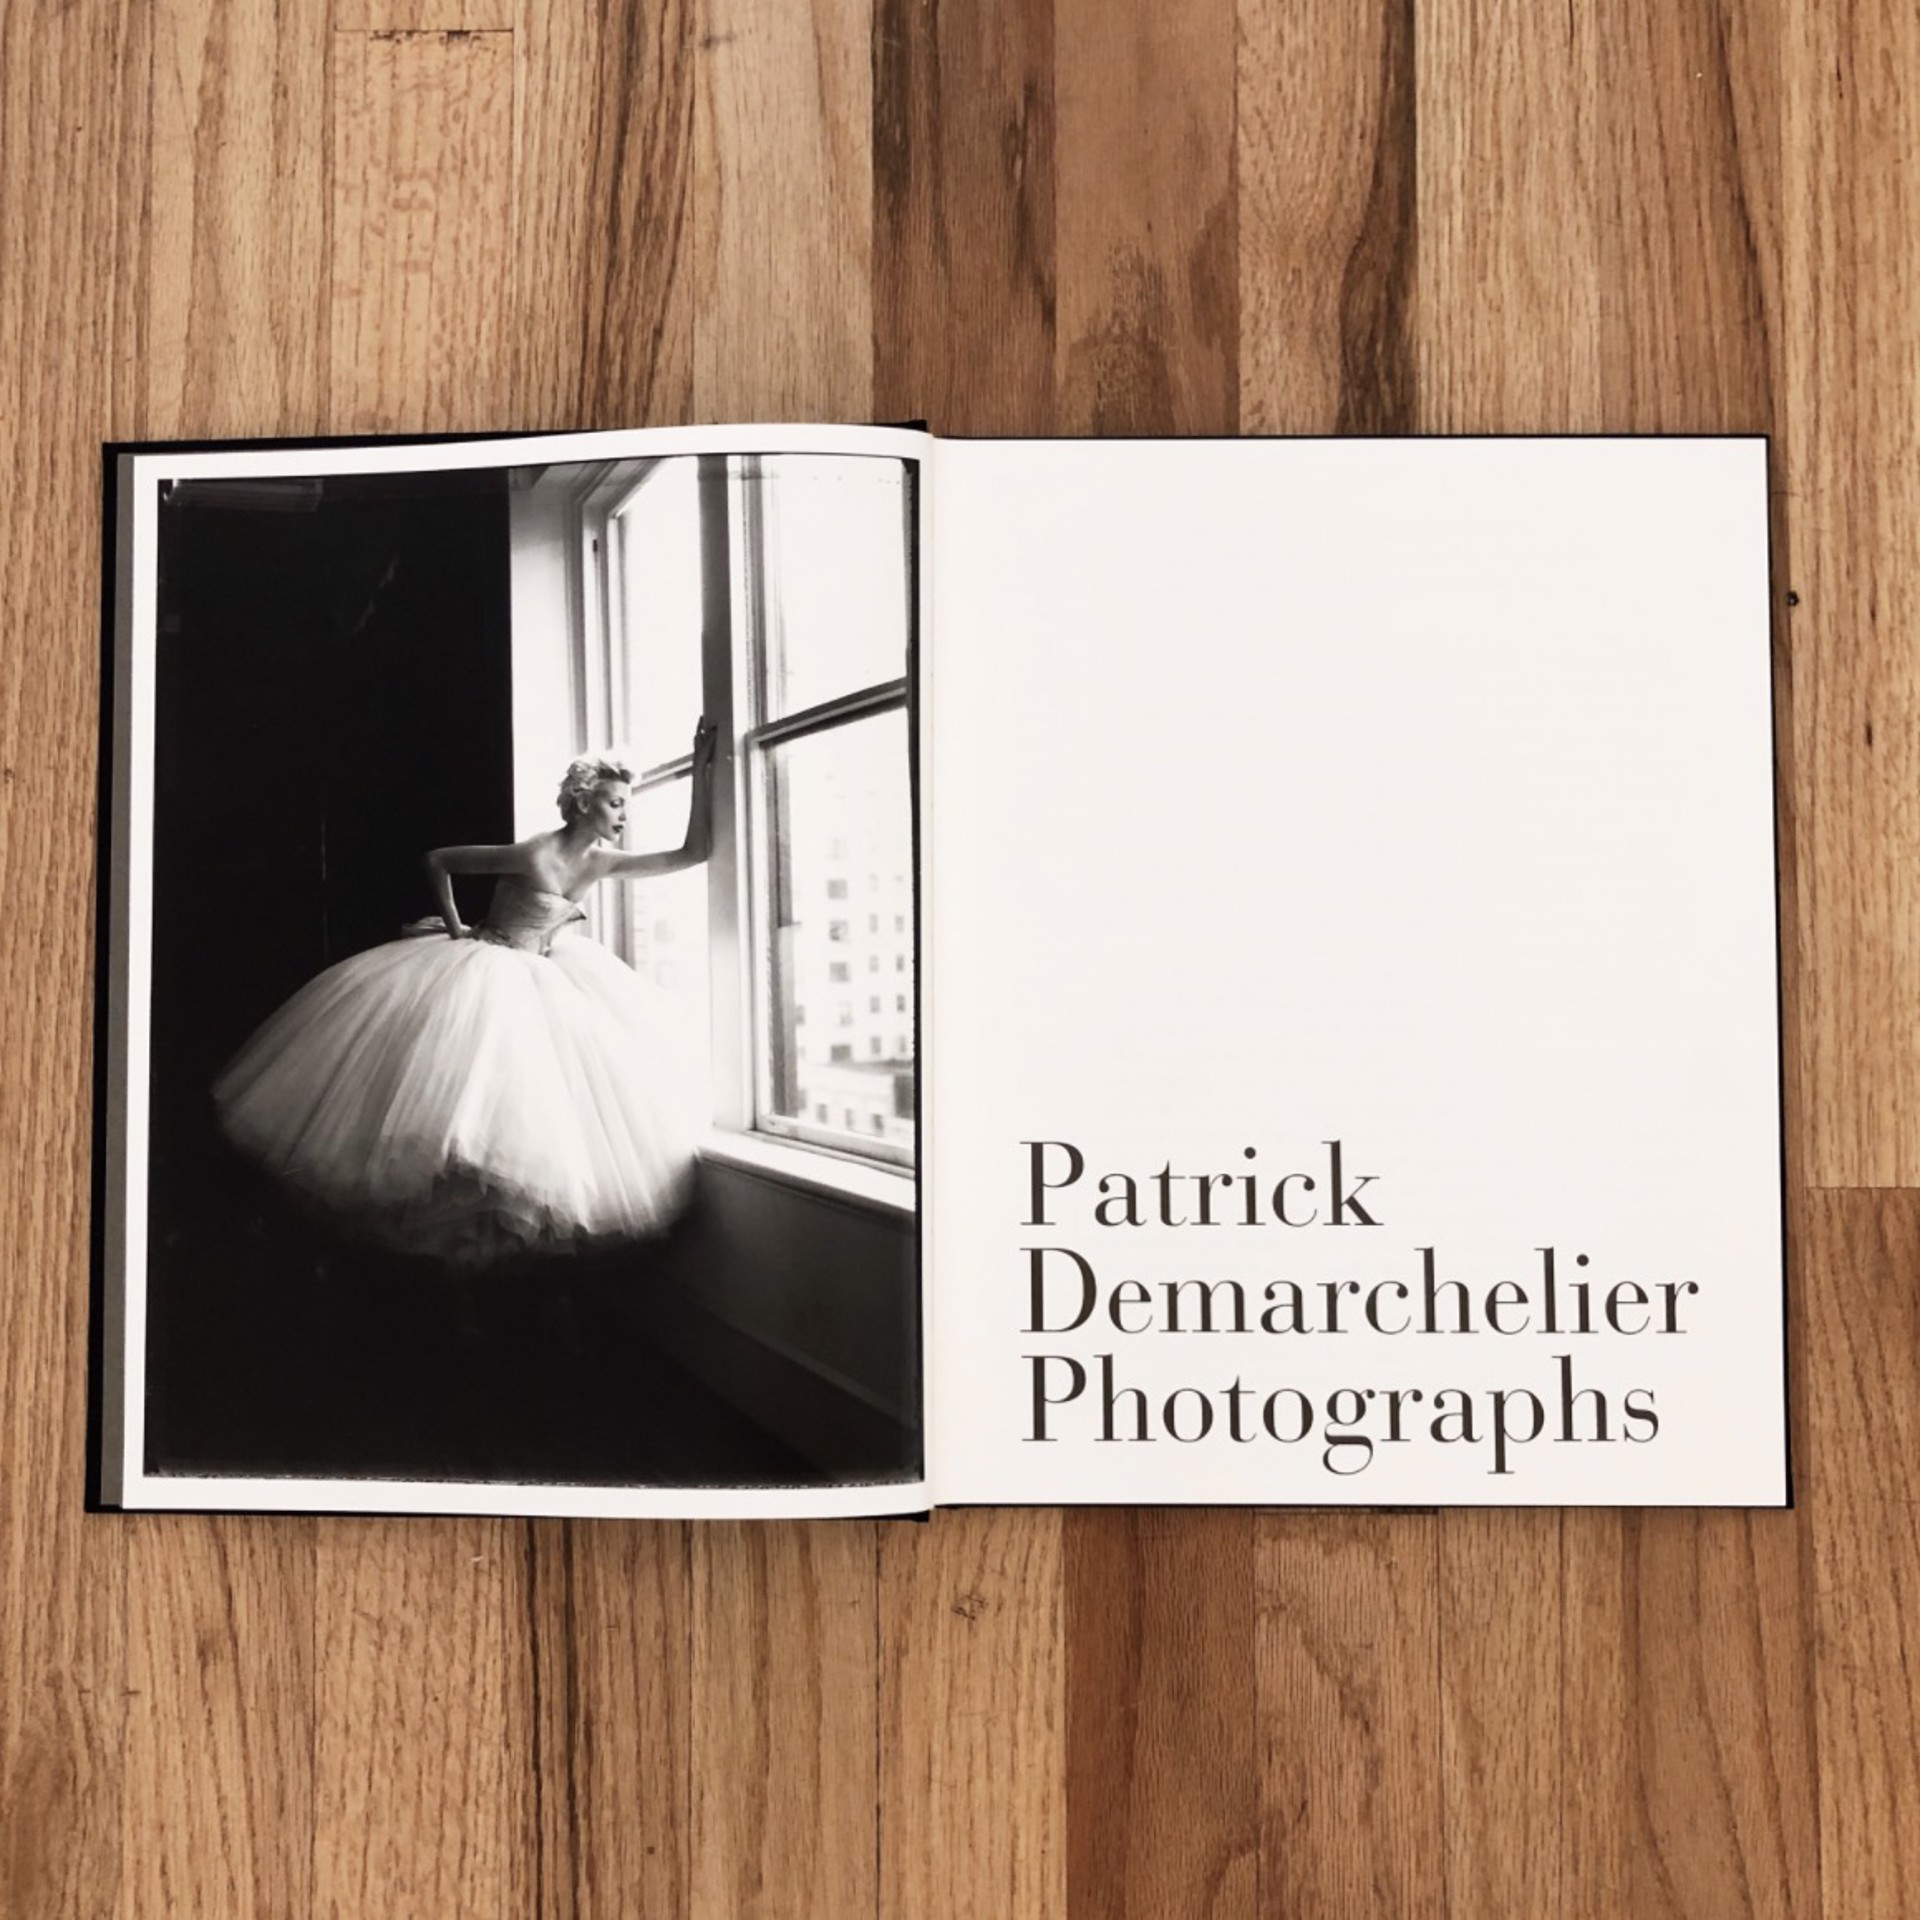 Patrick Demarchelier: Photographs by Patrick Demarchelier